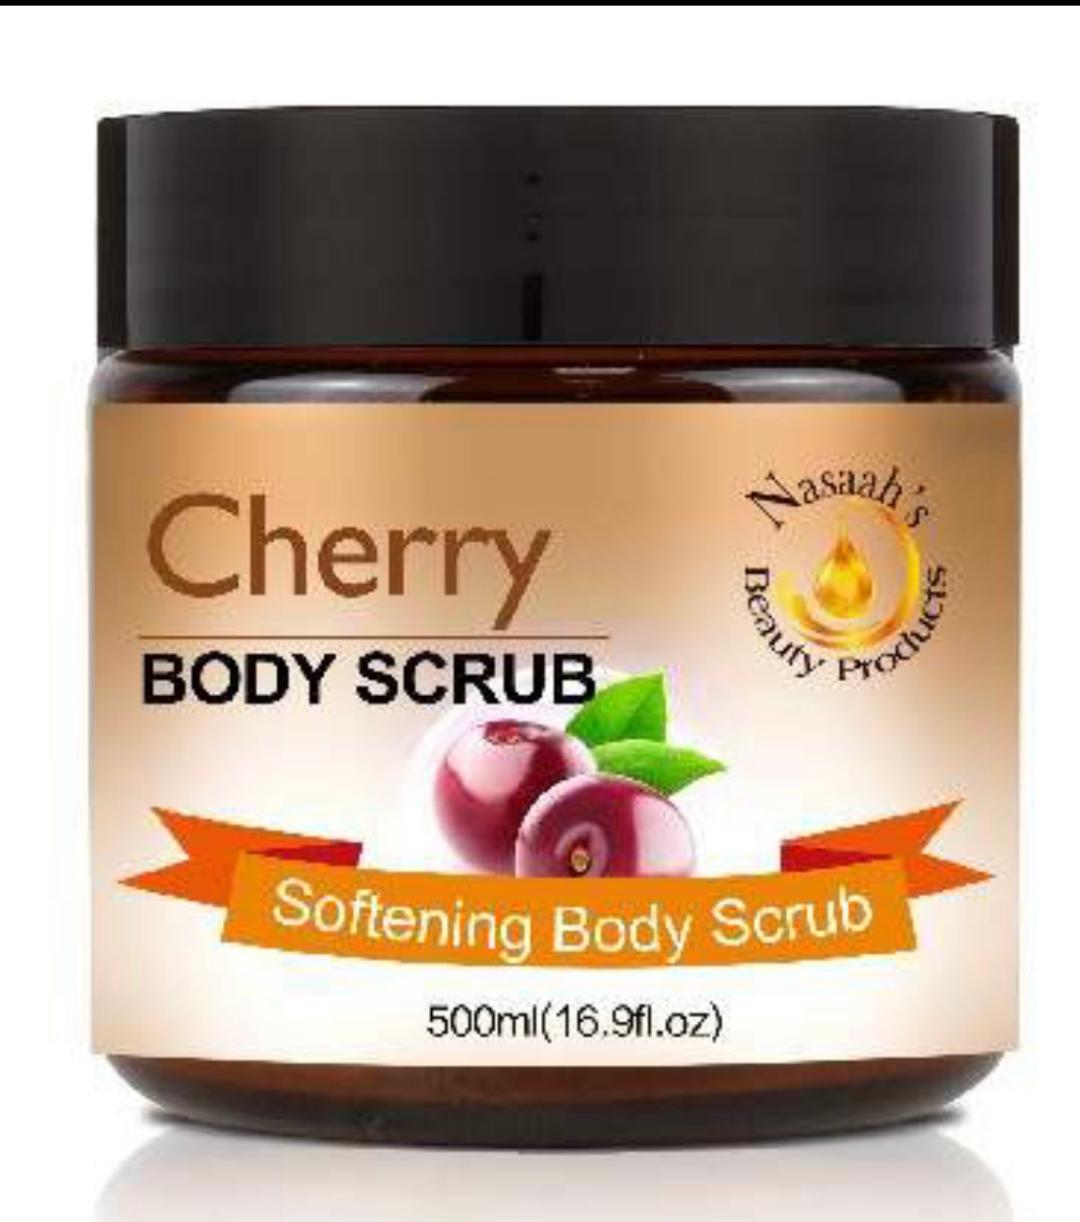 Cherry Body Scrub